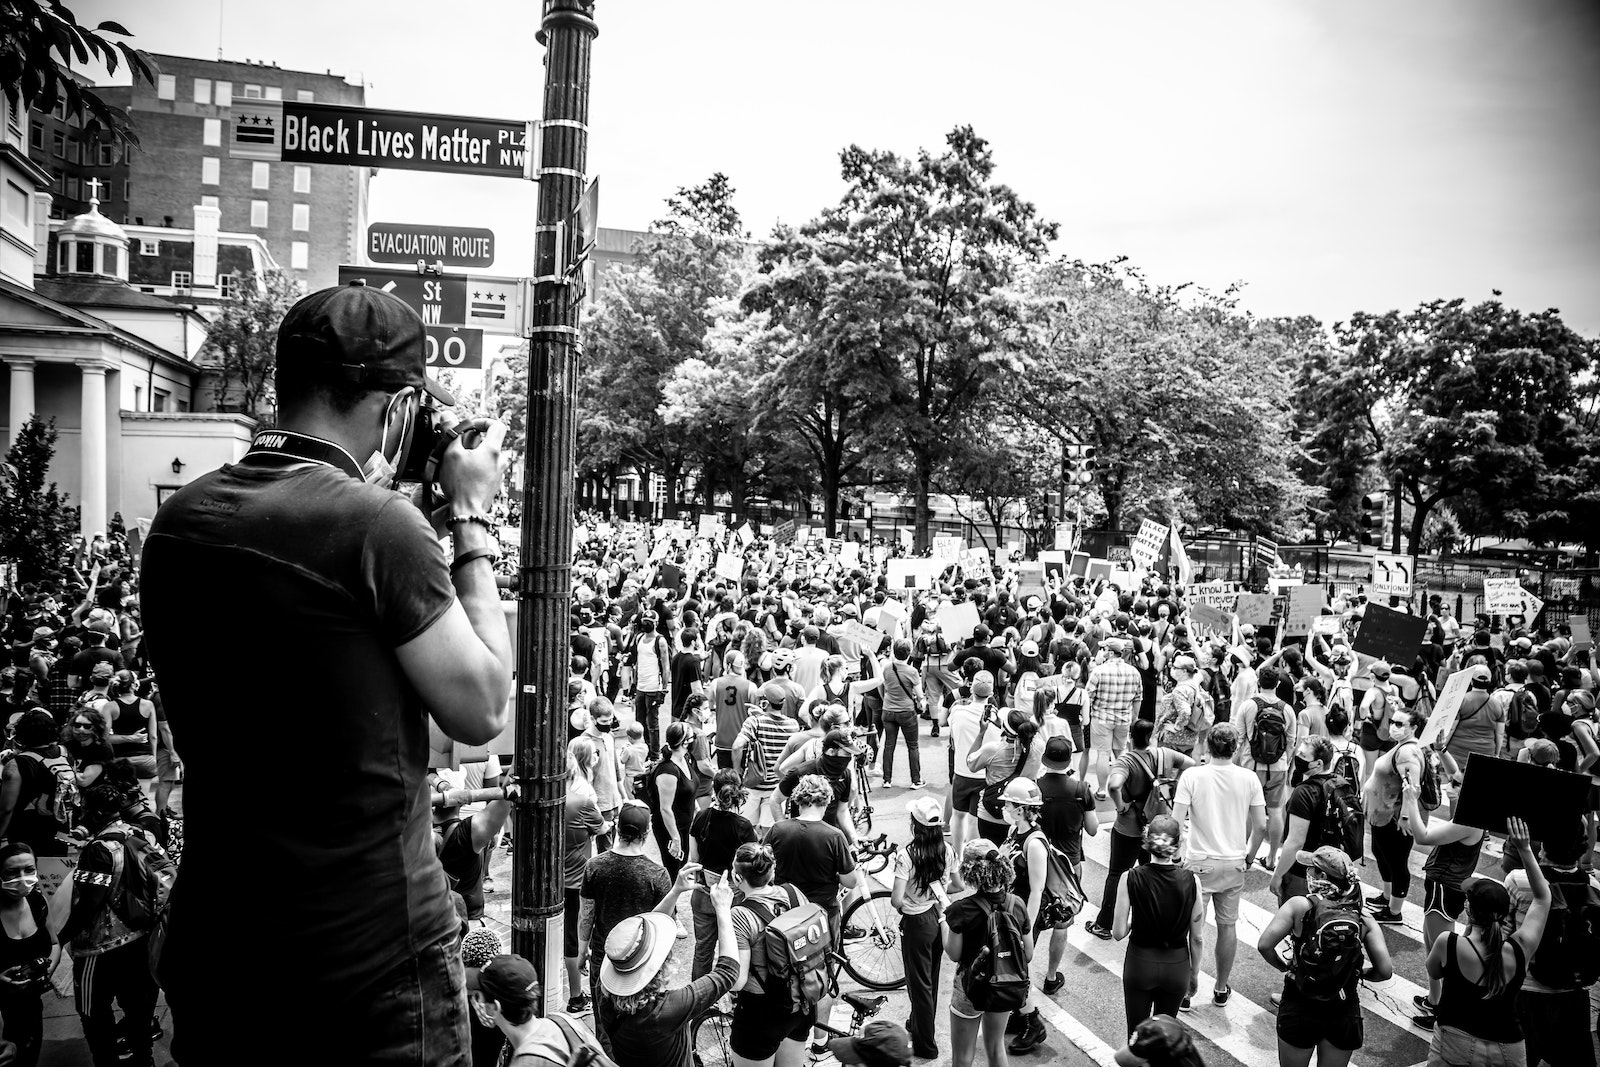 image of Black Lives Matter protest in D.C.